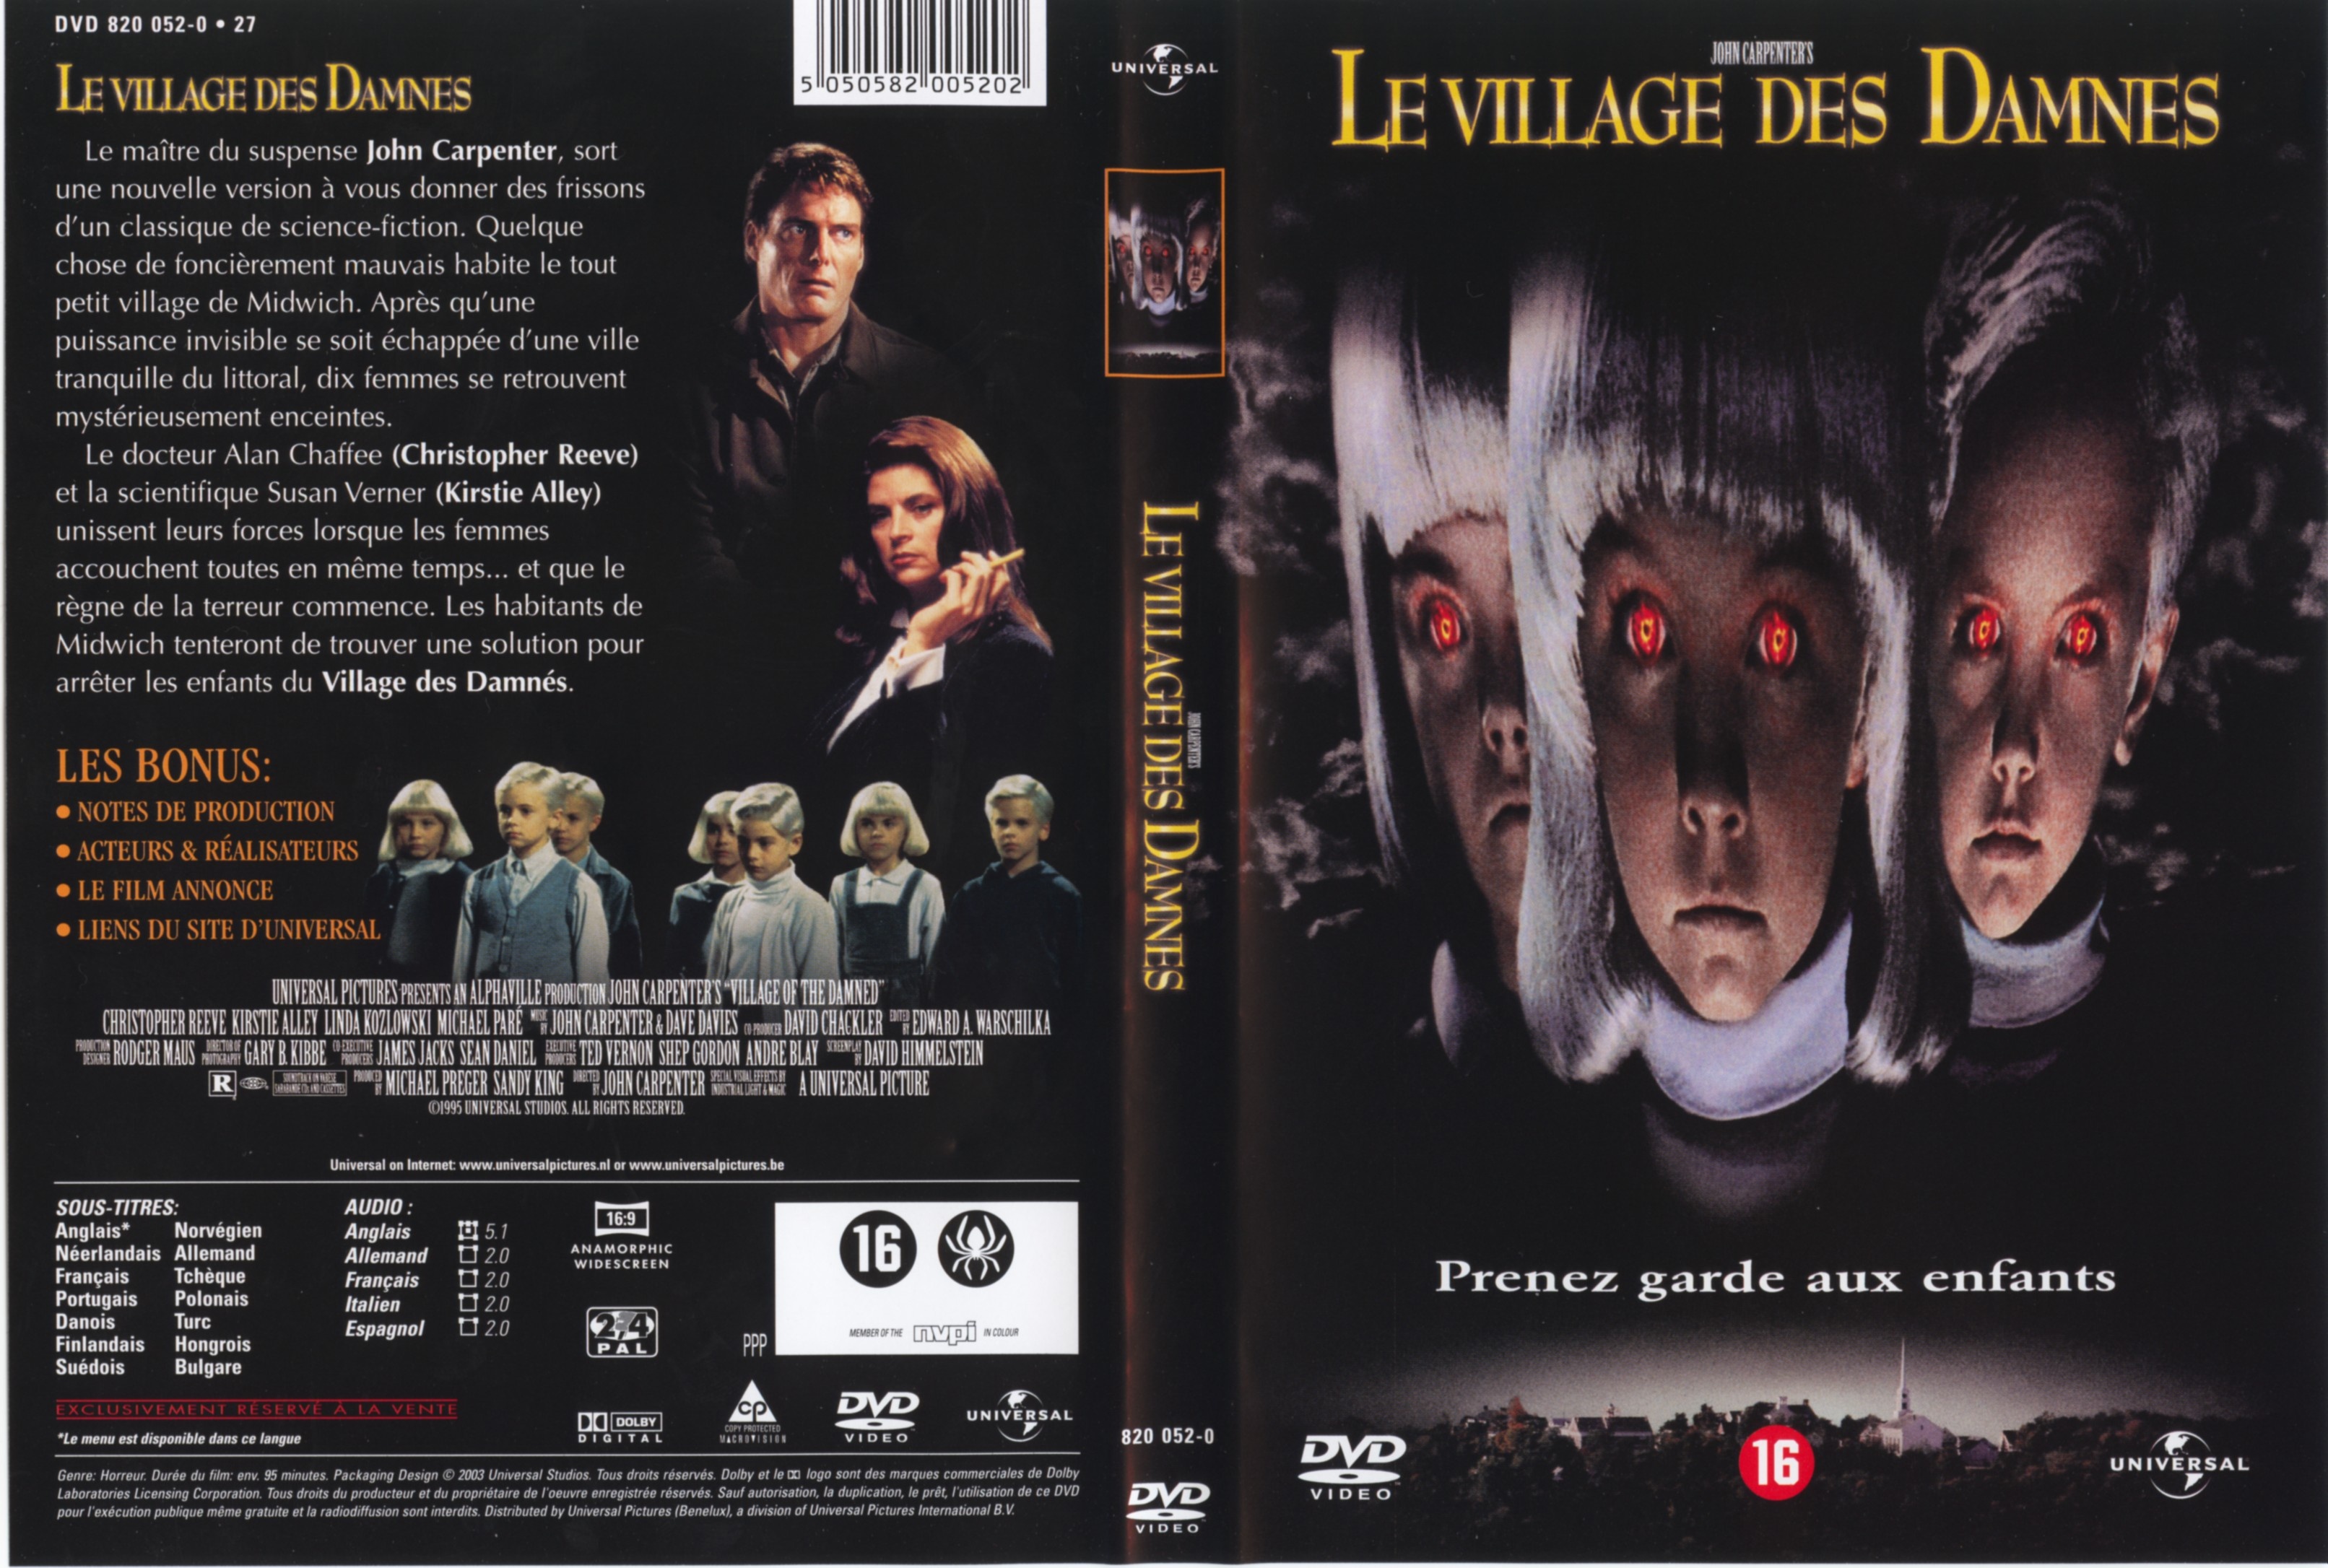 Jaquette DVD Le village des damnes v3